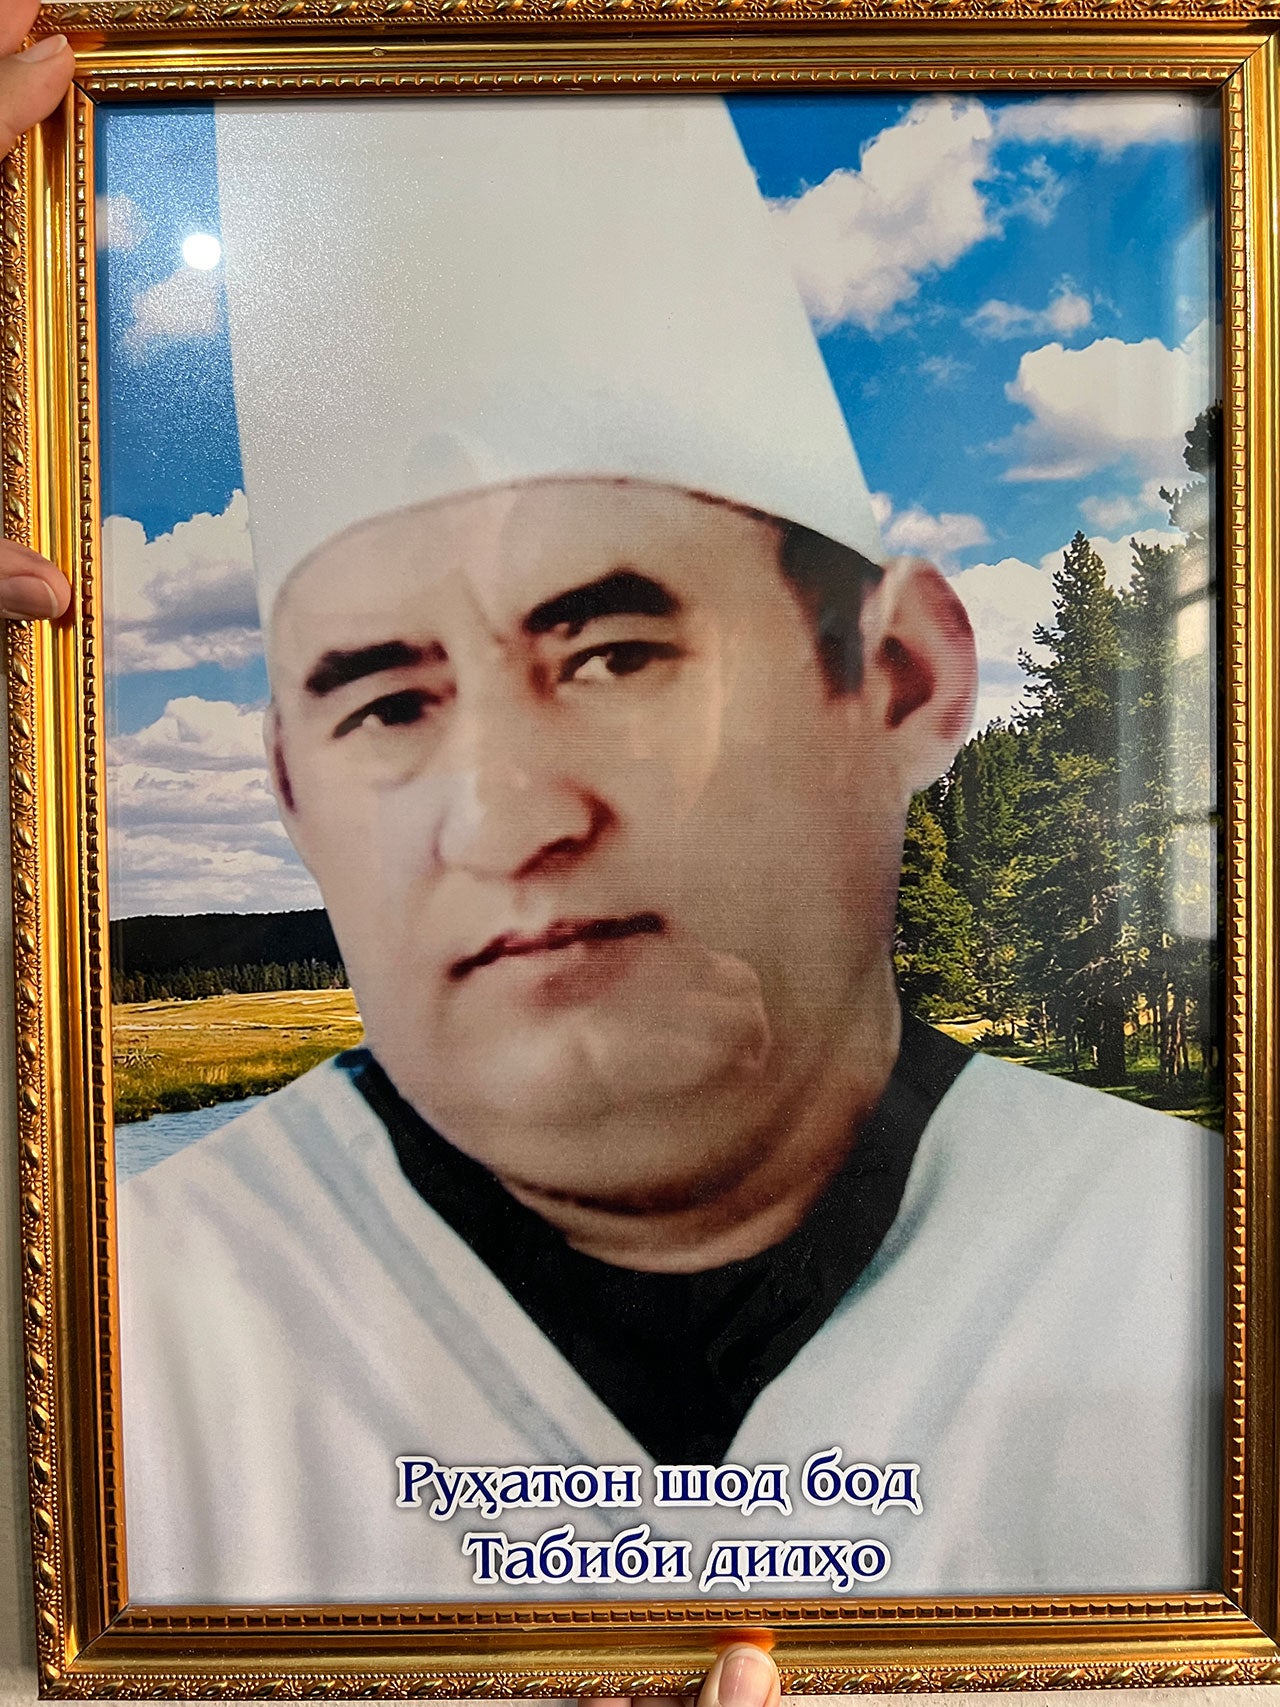 Таджикистанский врач Солиджон Рахимов, 45 лет, погиб 16 сентября 2022 г. в результате обстрела машины скорой помощи в селении Овчикалача. Стрельба велась с гор, которые контролировались кыргызстанскими военными. Таджикистан. © 2022, Частное фото